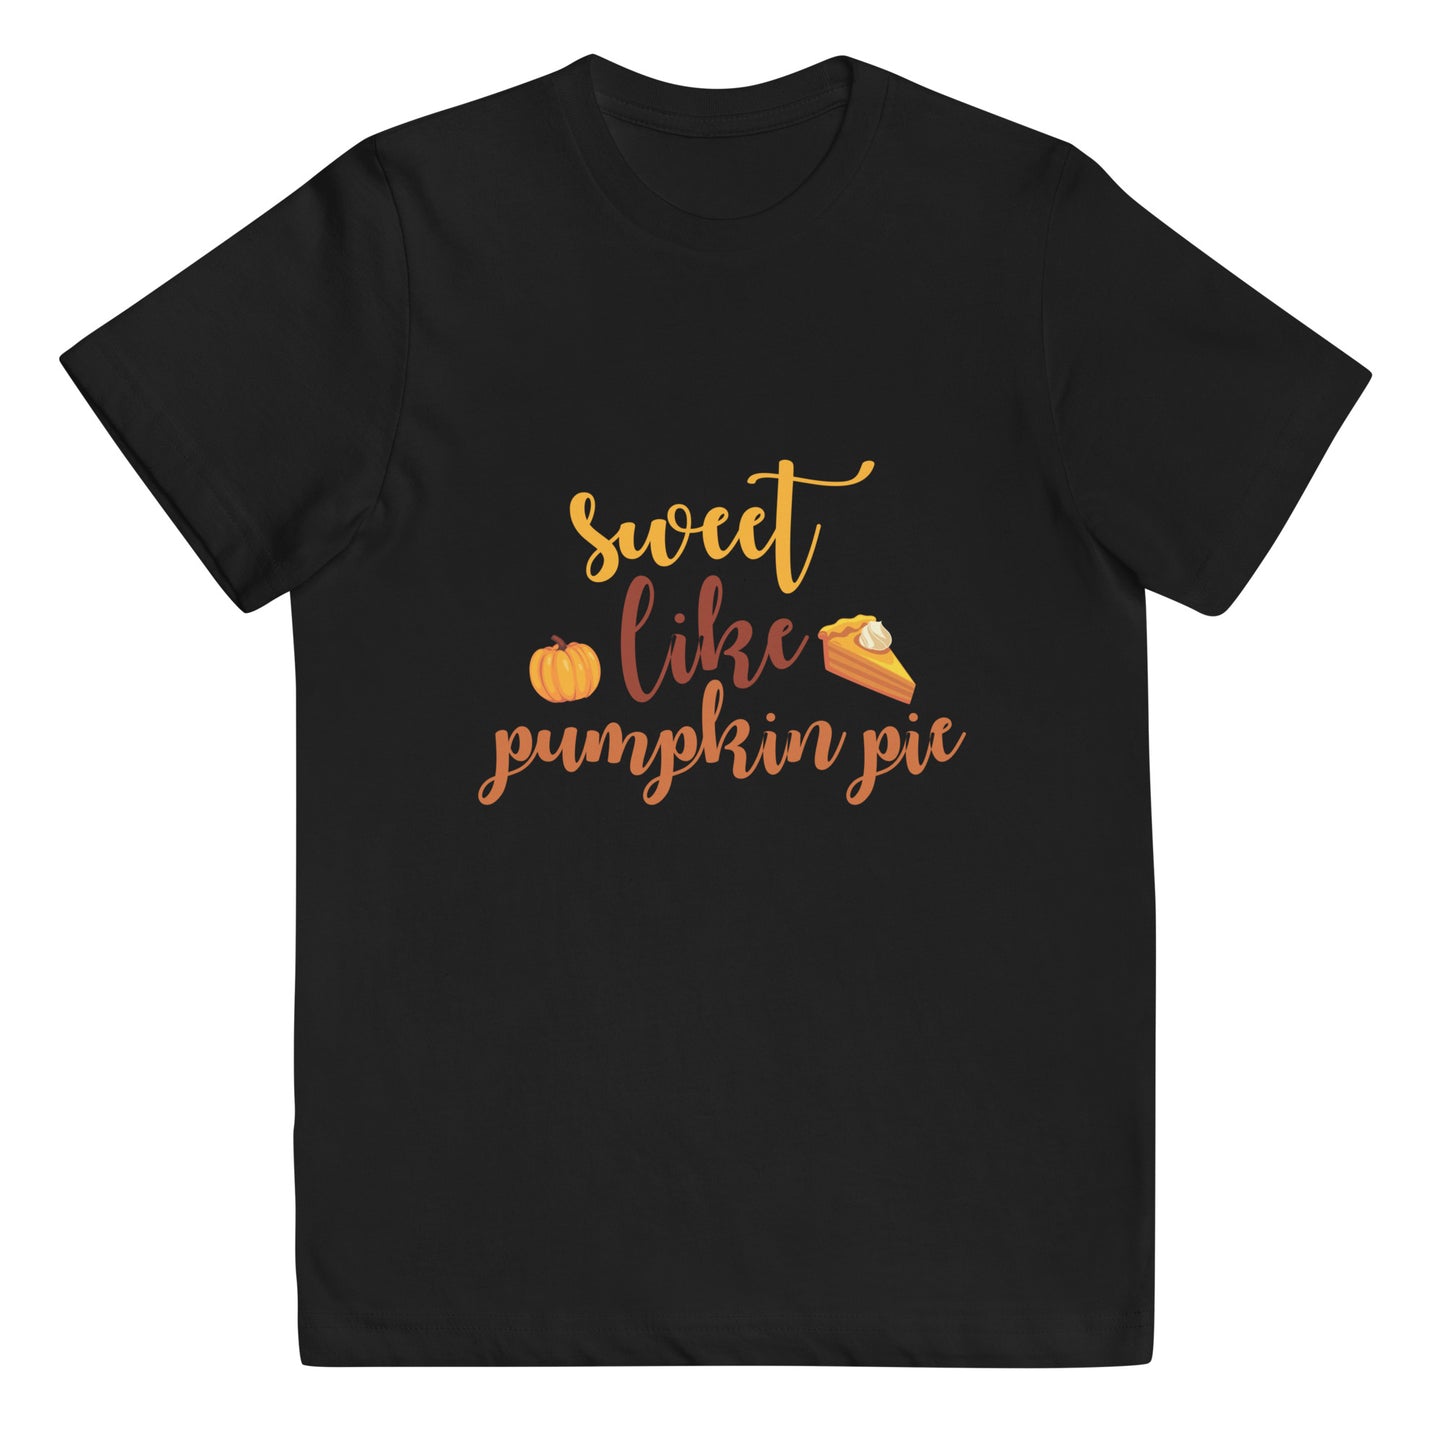 Sweet Like Pumpkin Pie Youth jersey t-shirt